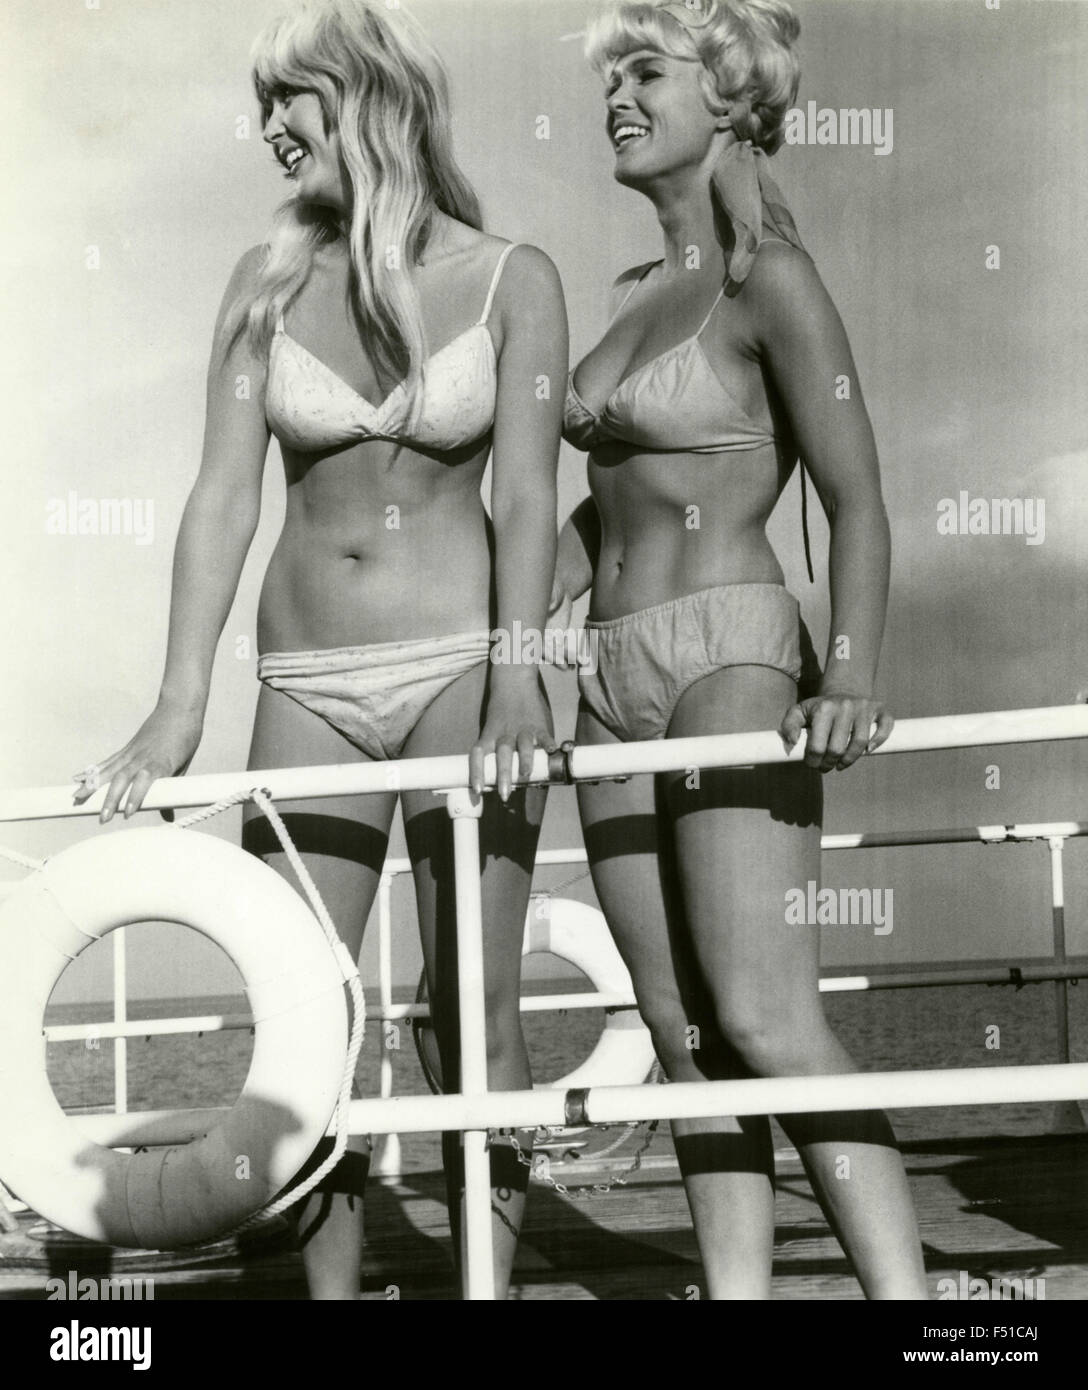 Dos chicas en bikini en una escena de la película "Easy, Easy go', EE.UU  Fotografía de stock - Alamy